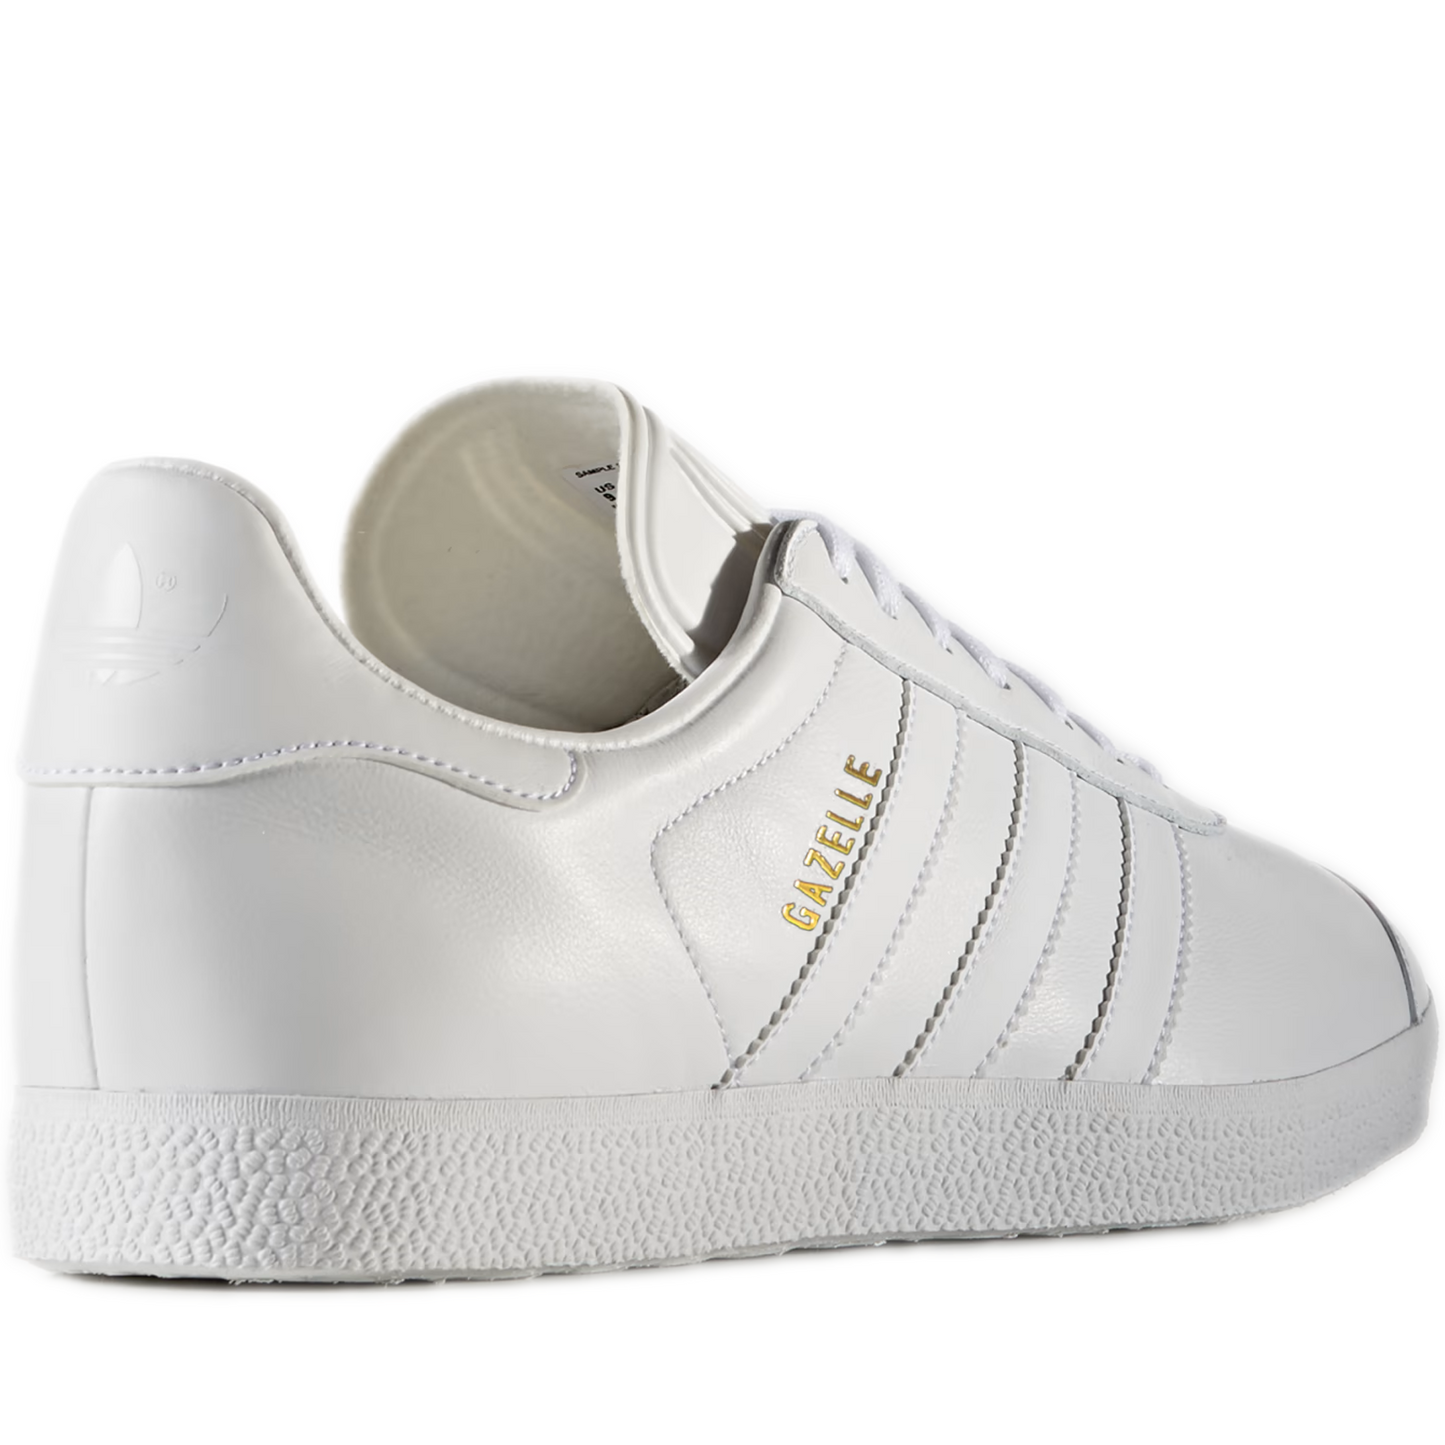 Men's Adidas Gazelle Shoes - All White